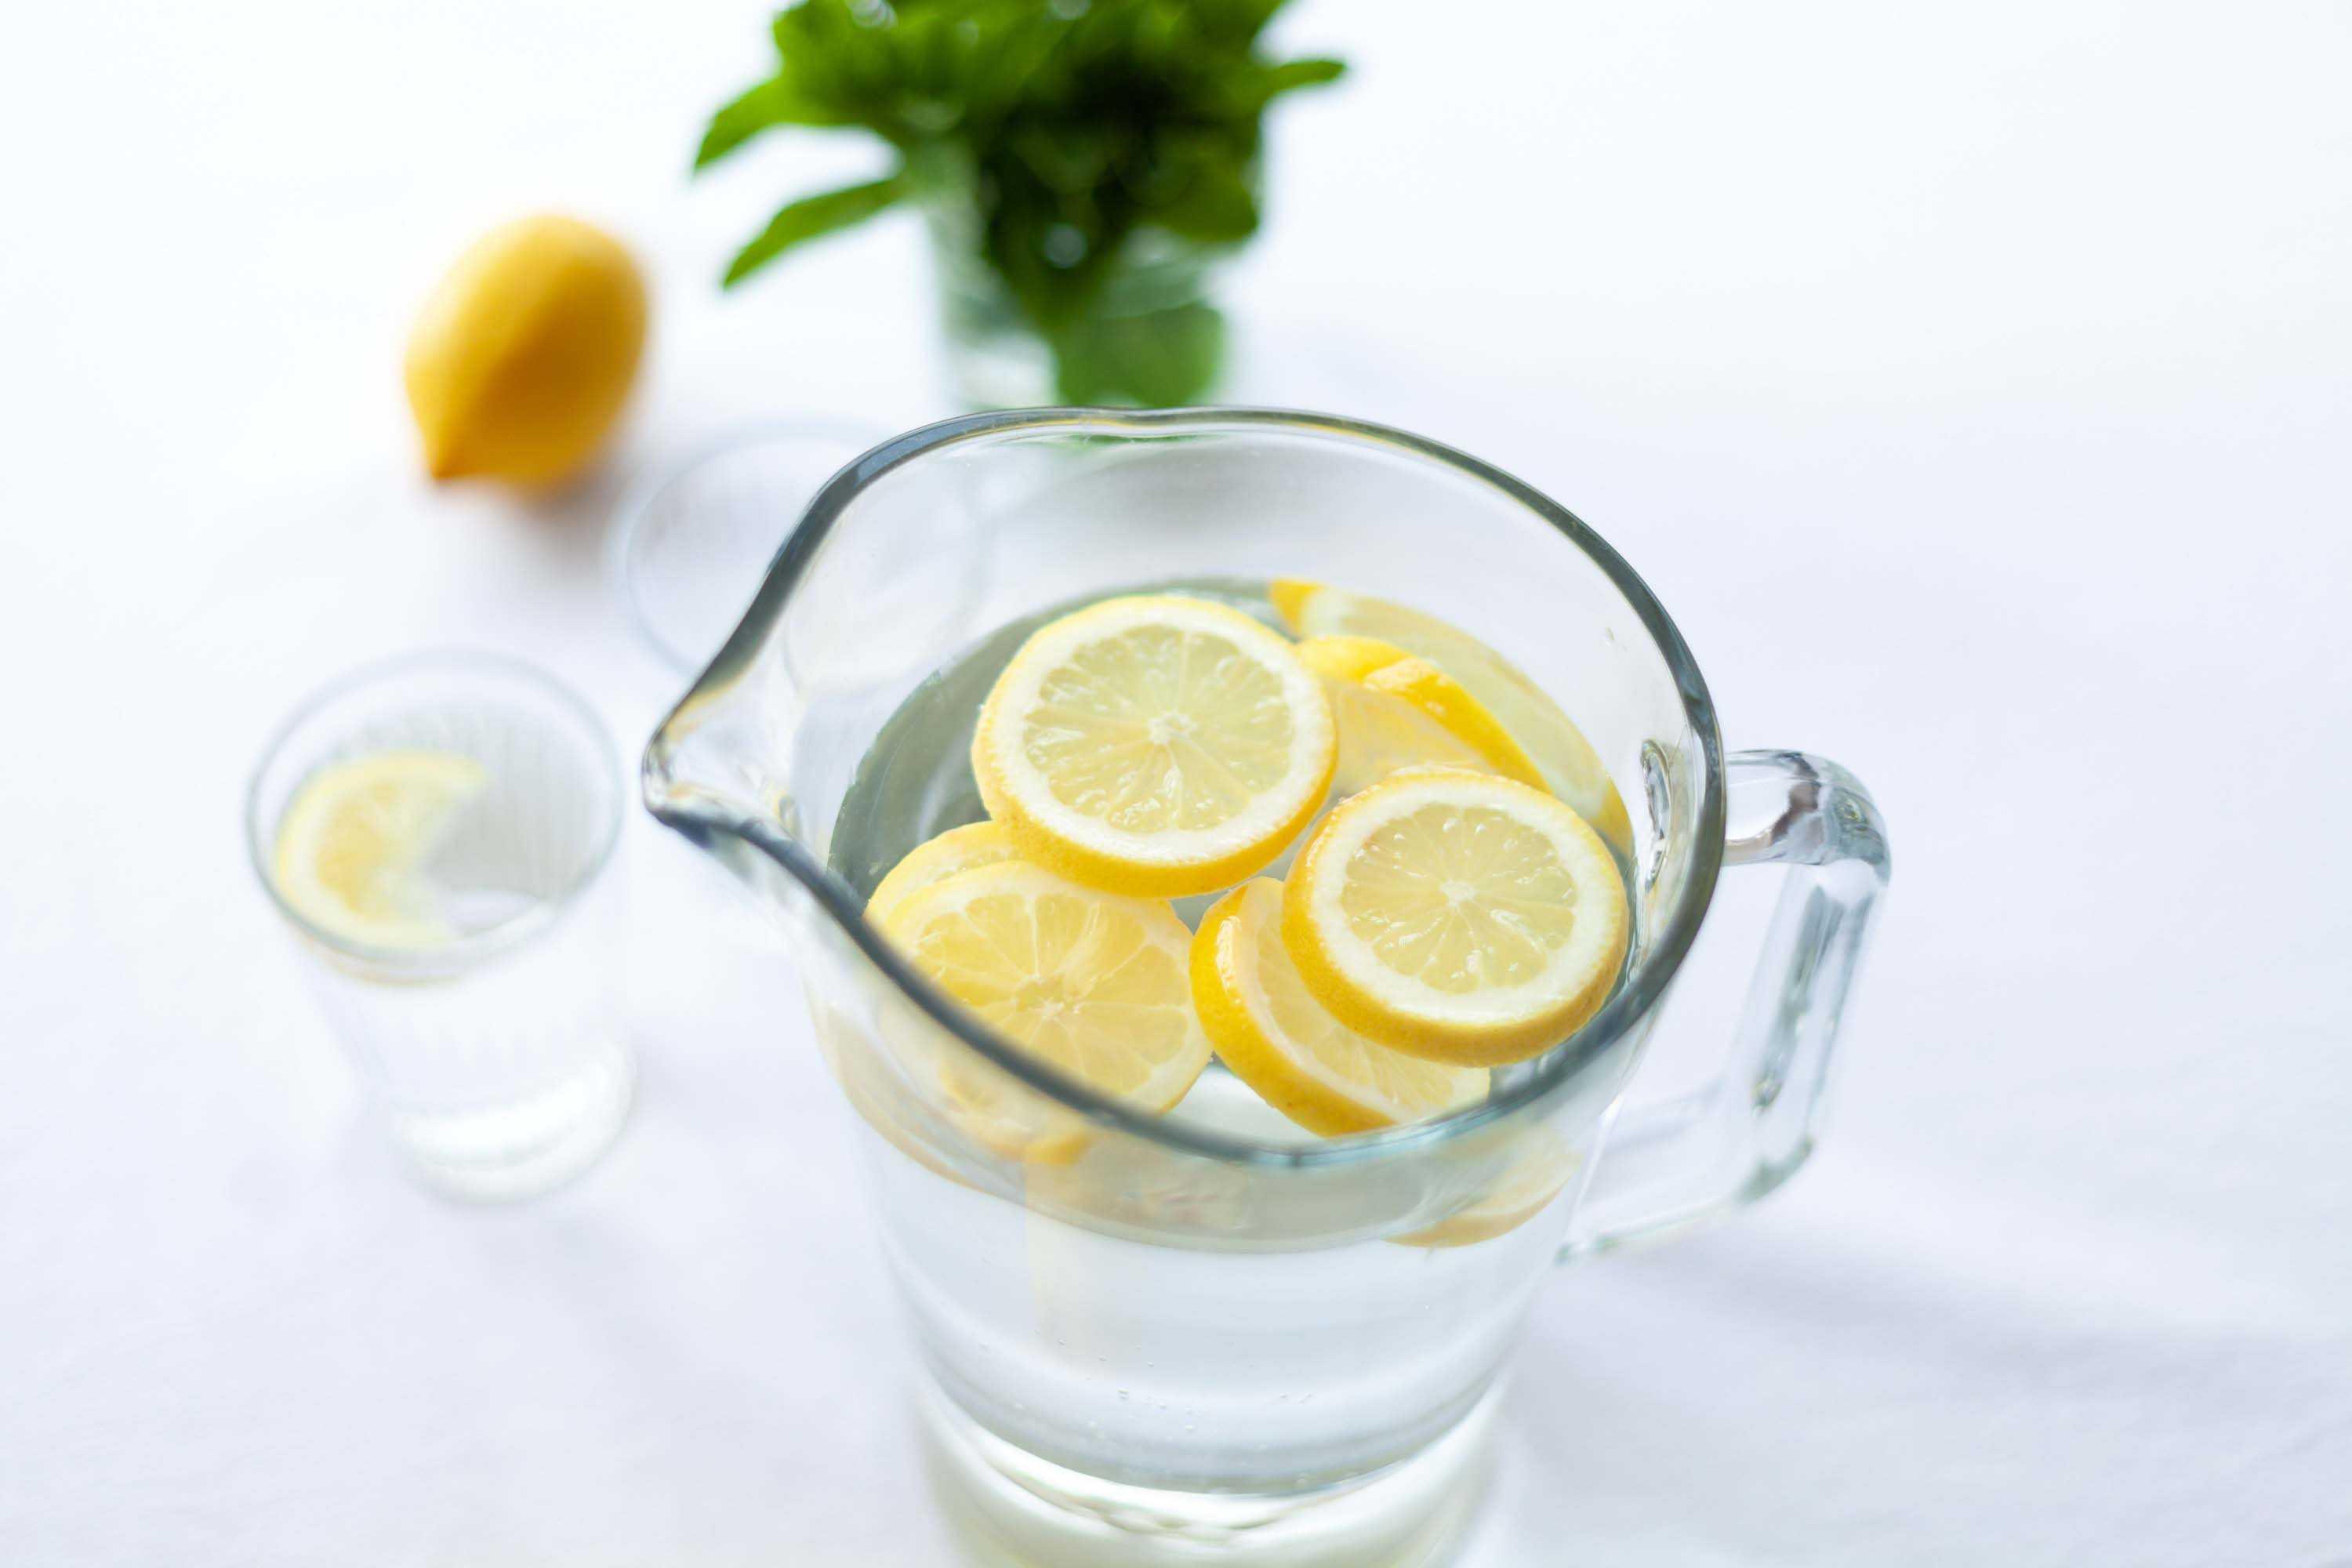 Натощак воду с лимоном можно. Вода с лимоном. Стакан воды с лимоном. Лимон. Вода с лимонным соком.